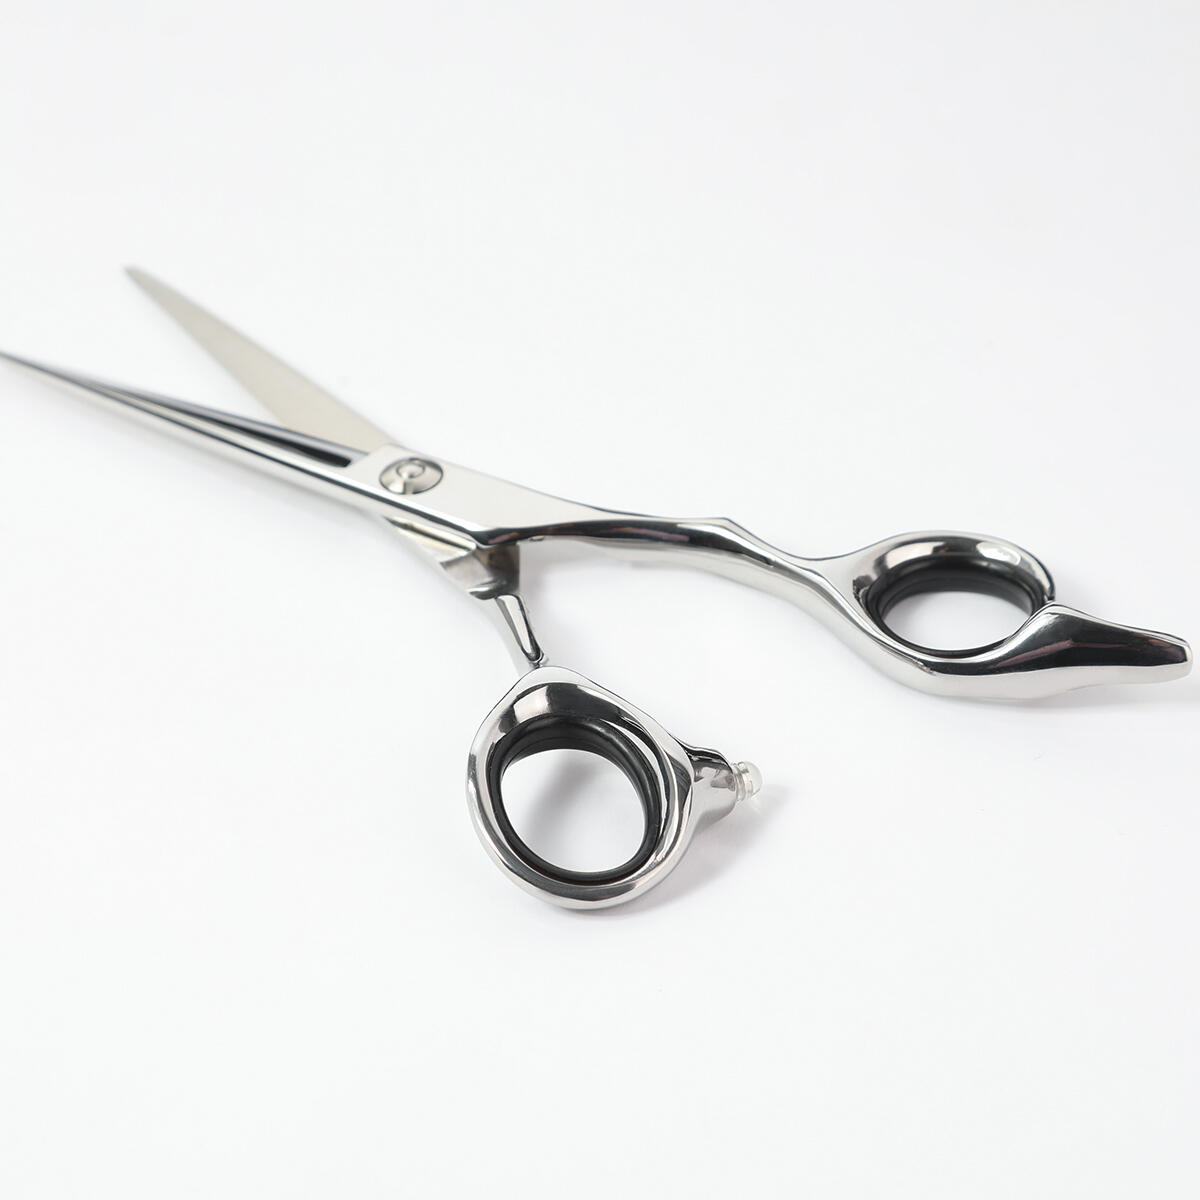 Extensions scissors null